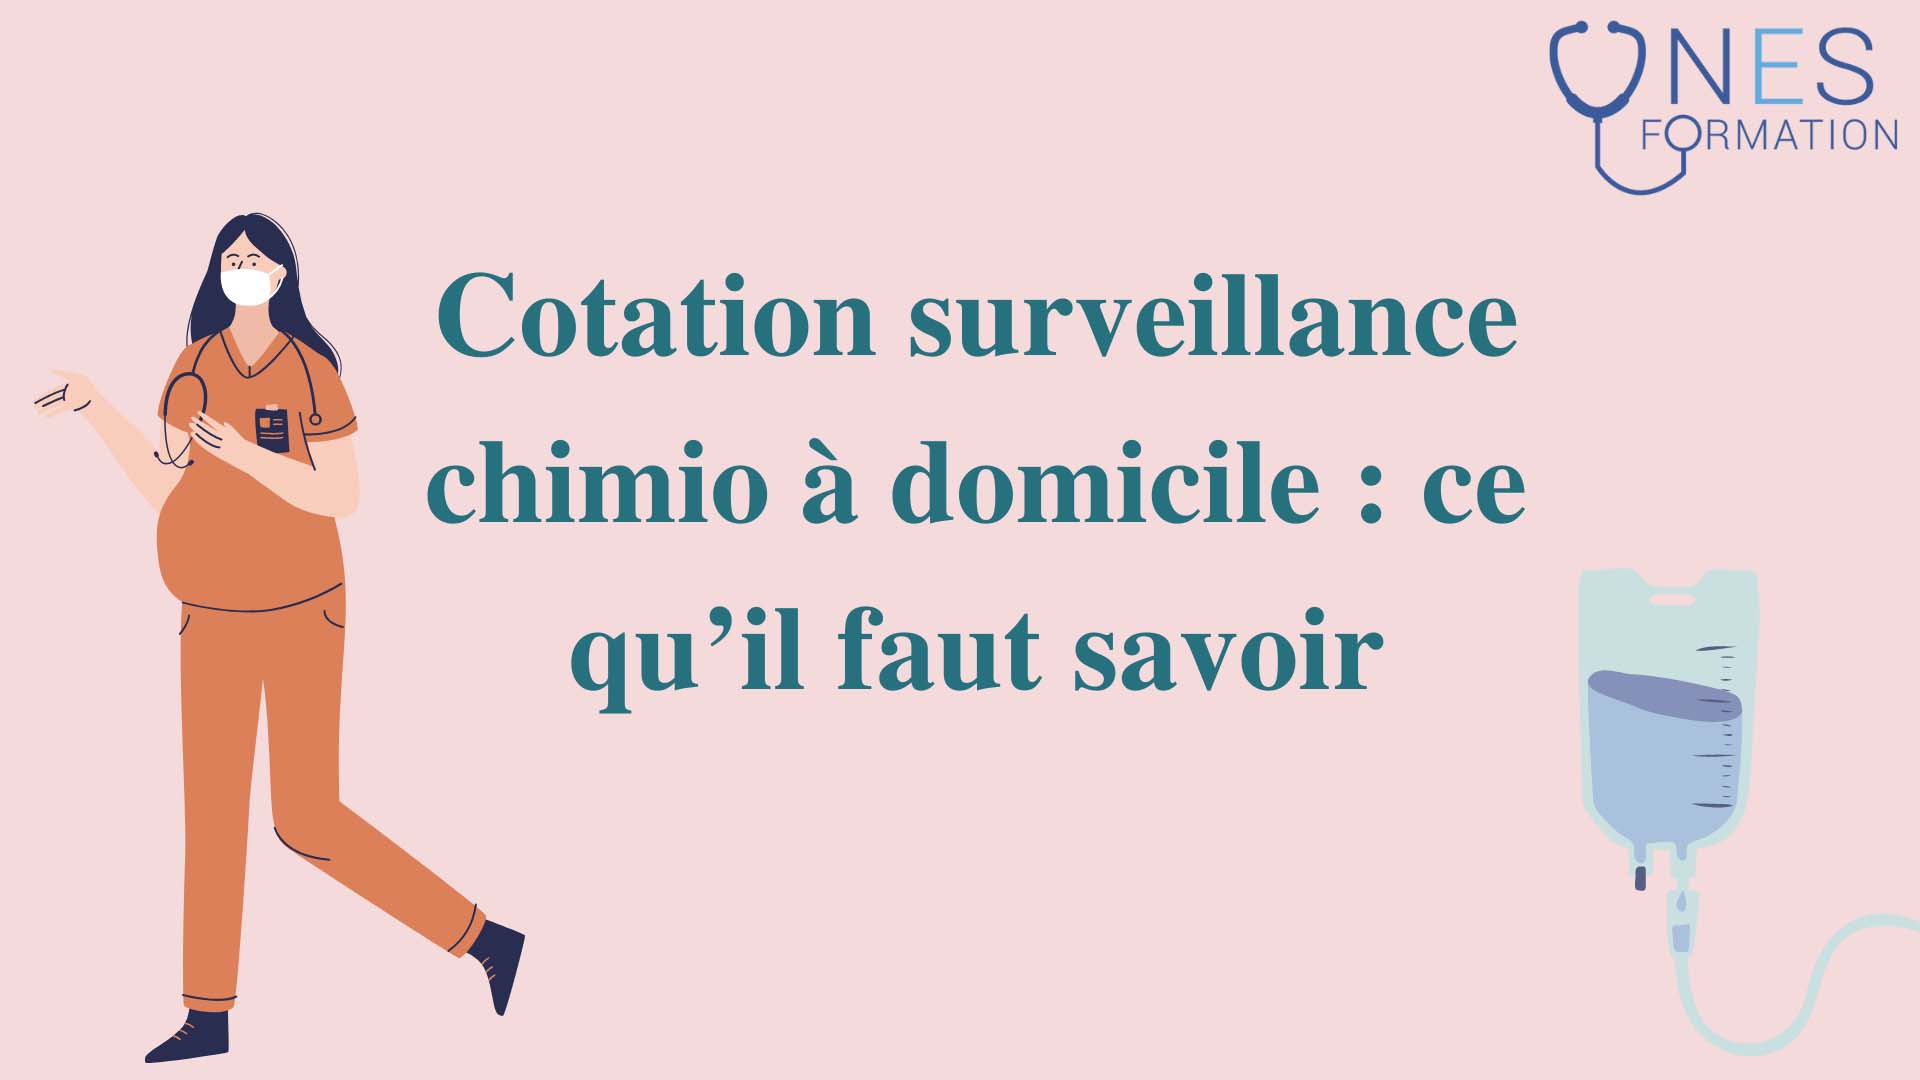 Article blog cotation surveillance chimio